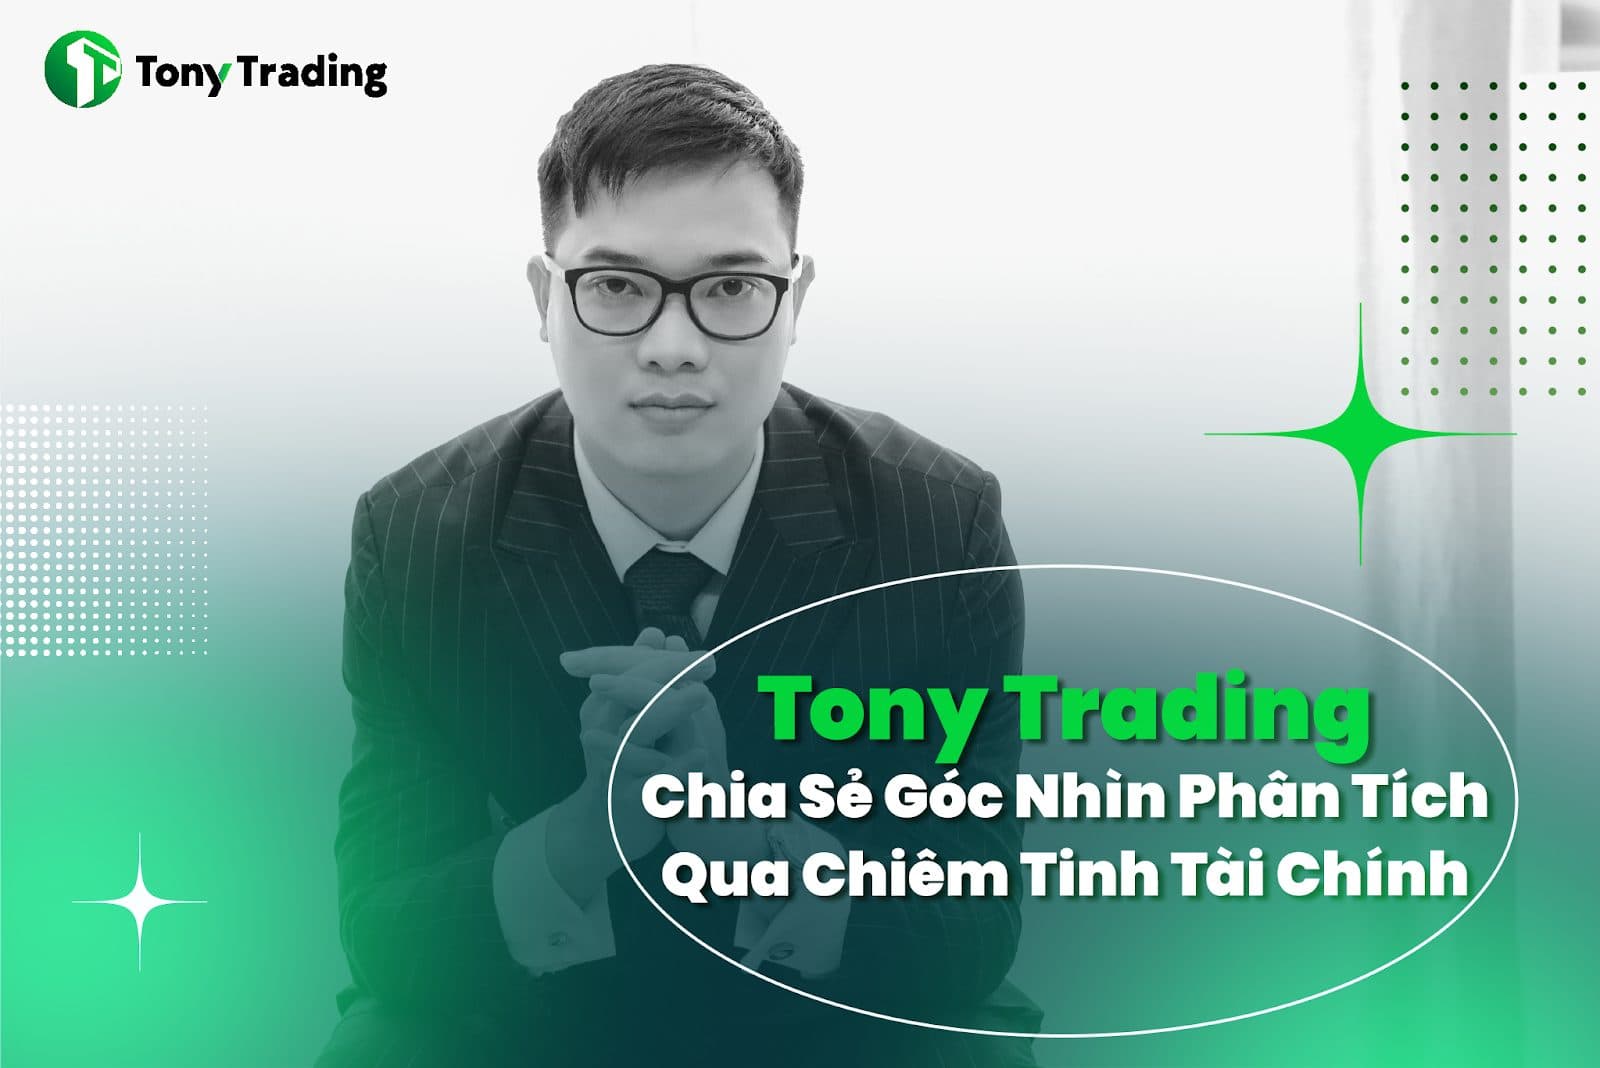 Tony Trading Chia Sẻ Góc Nhìn Phân Tích Qua Chiêm Tinh Tài Chính